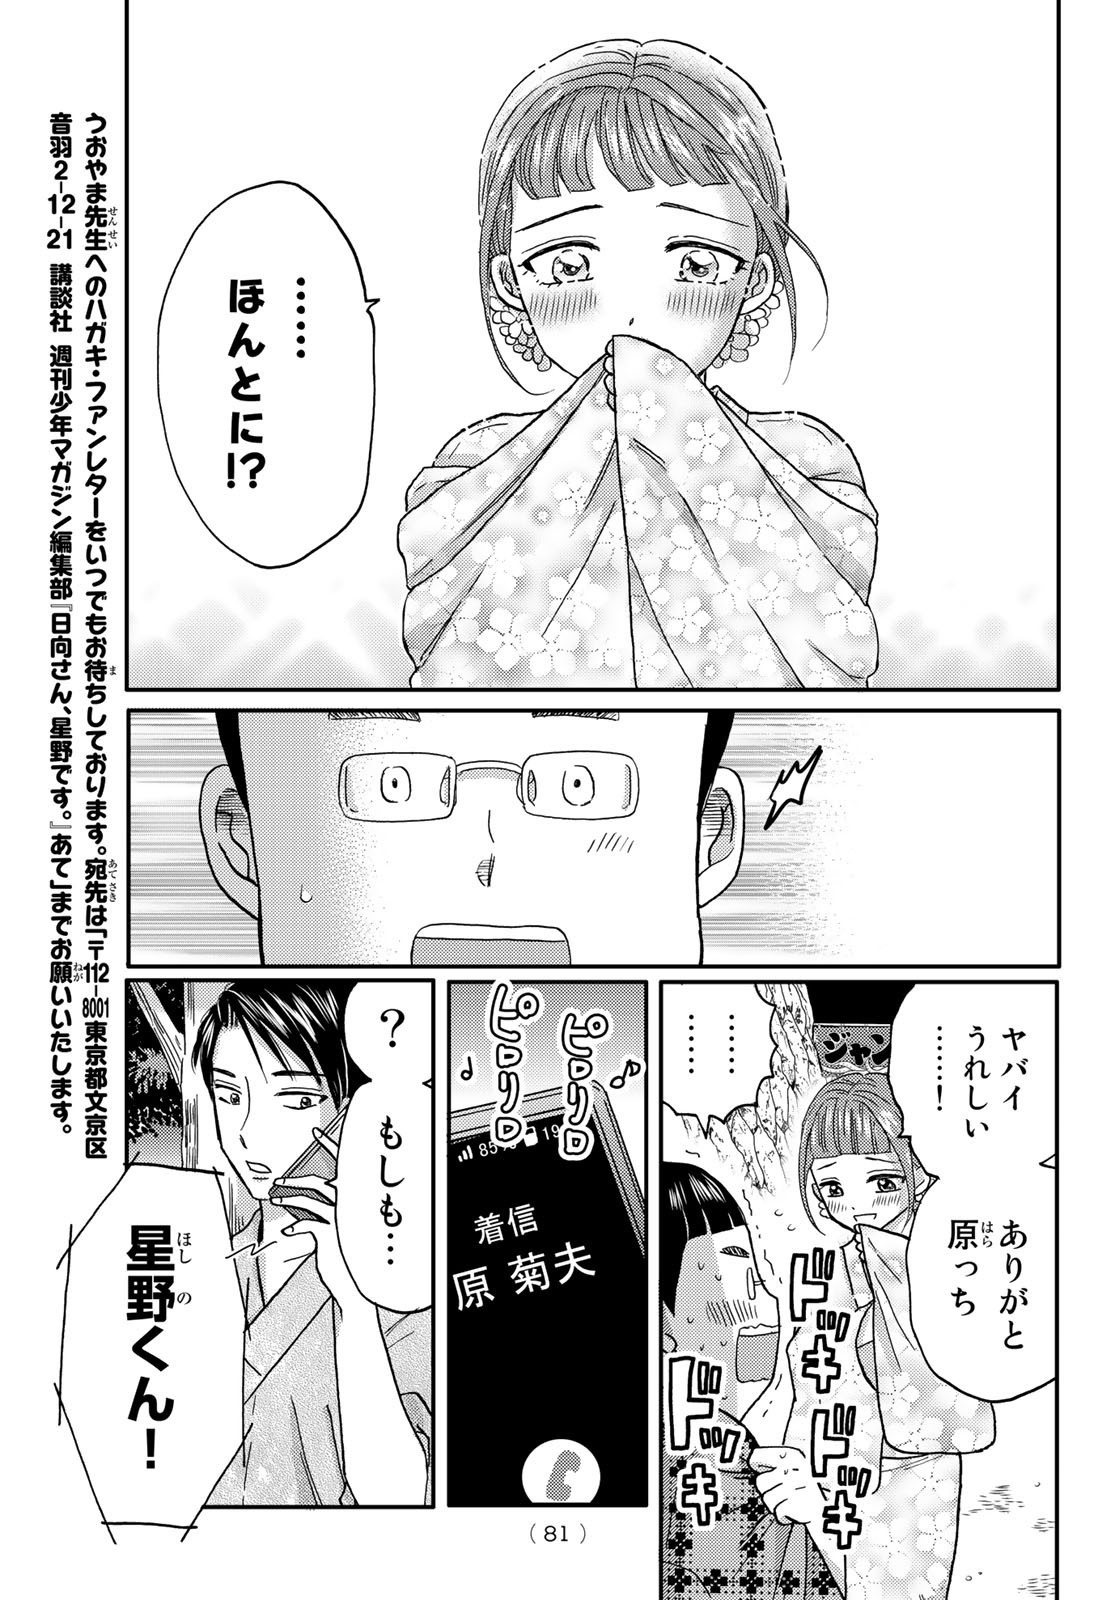 Hinata-san, Hoshino desu. - Chapter 046 - Page 9